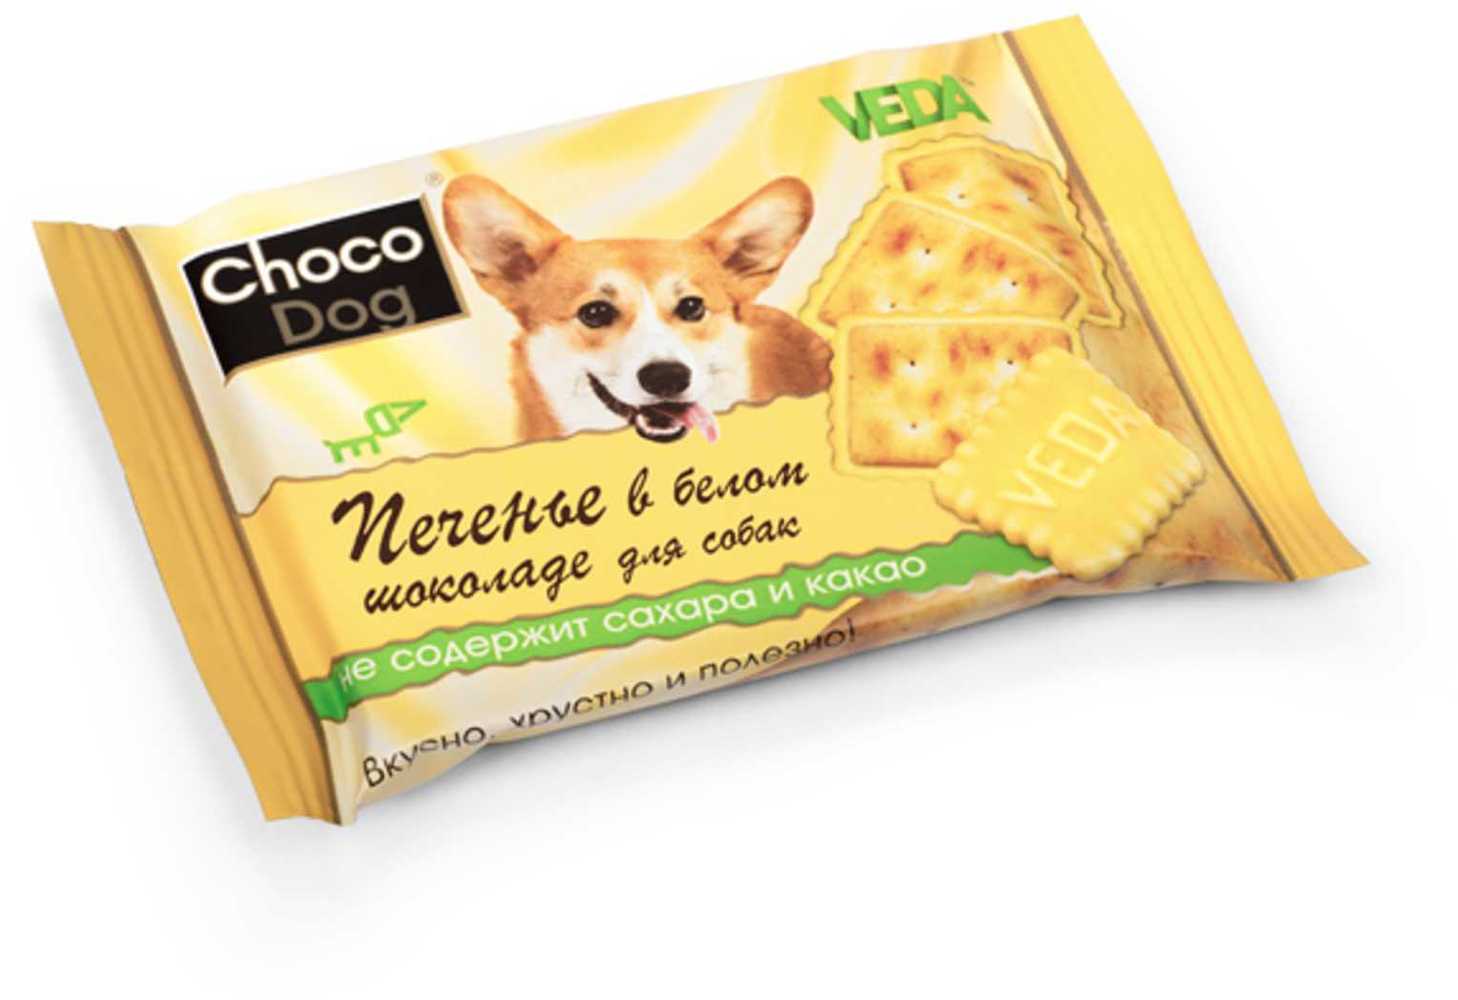 Веда Choco Dog Печенье в белом шоколаде для собак